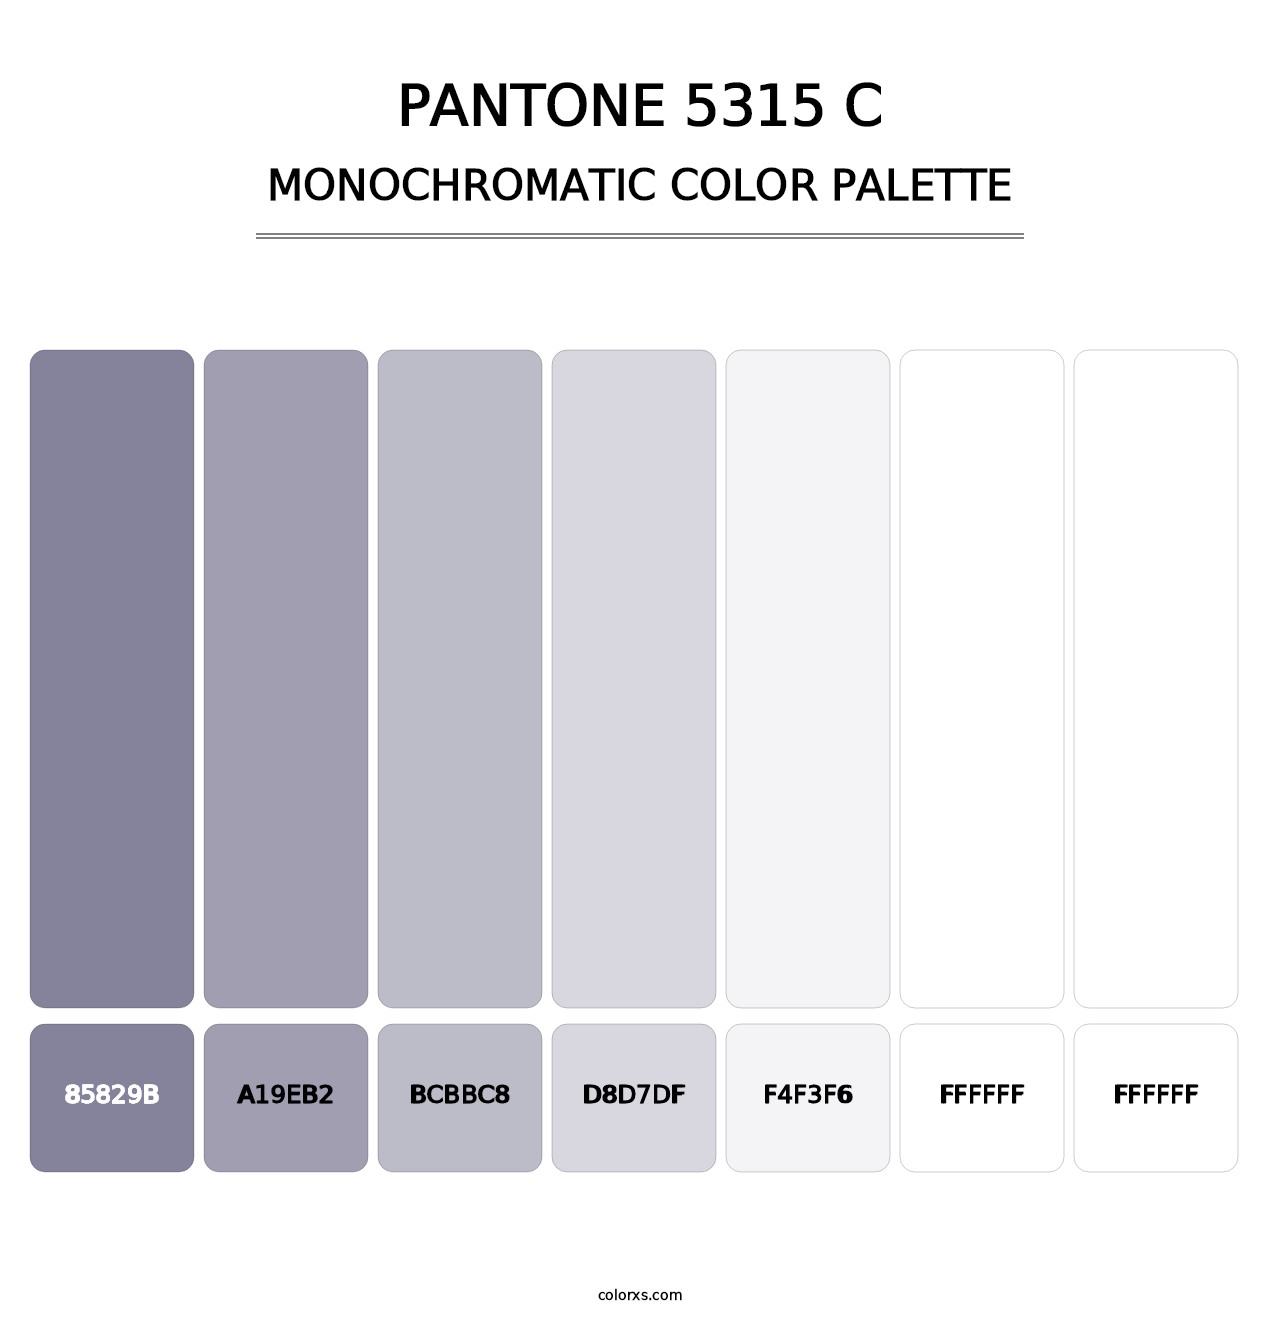 PANTONE 5315 C - Monochromatic Color Palette